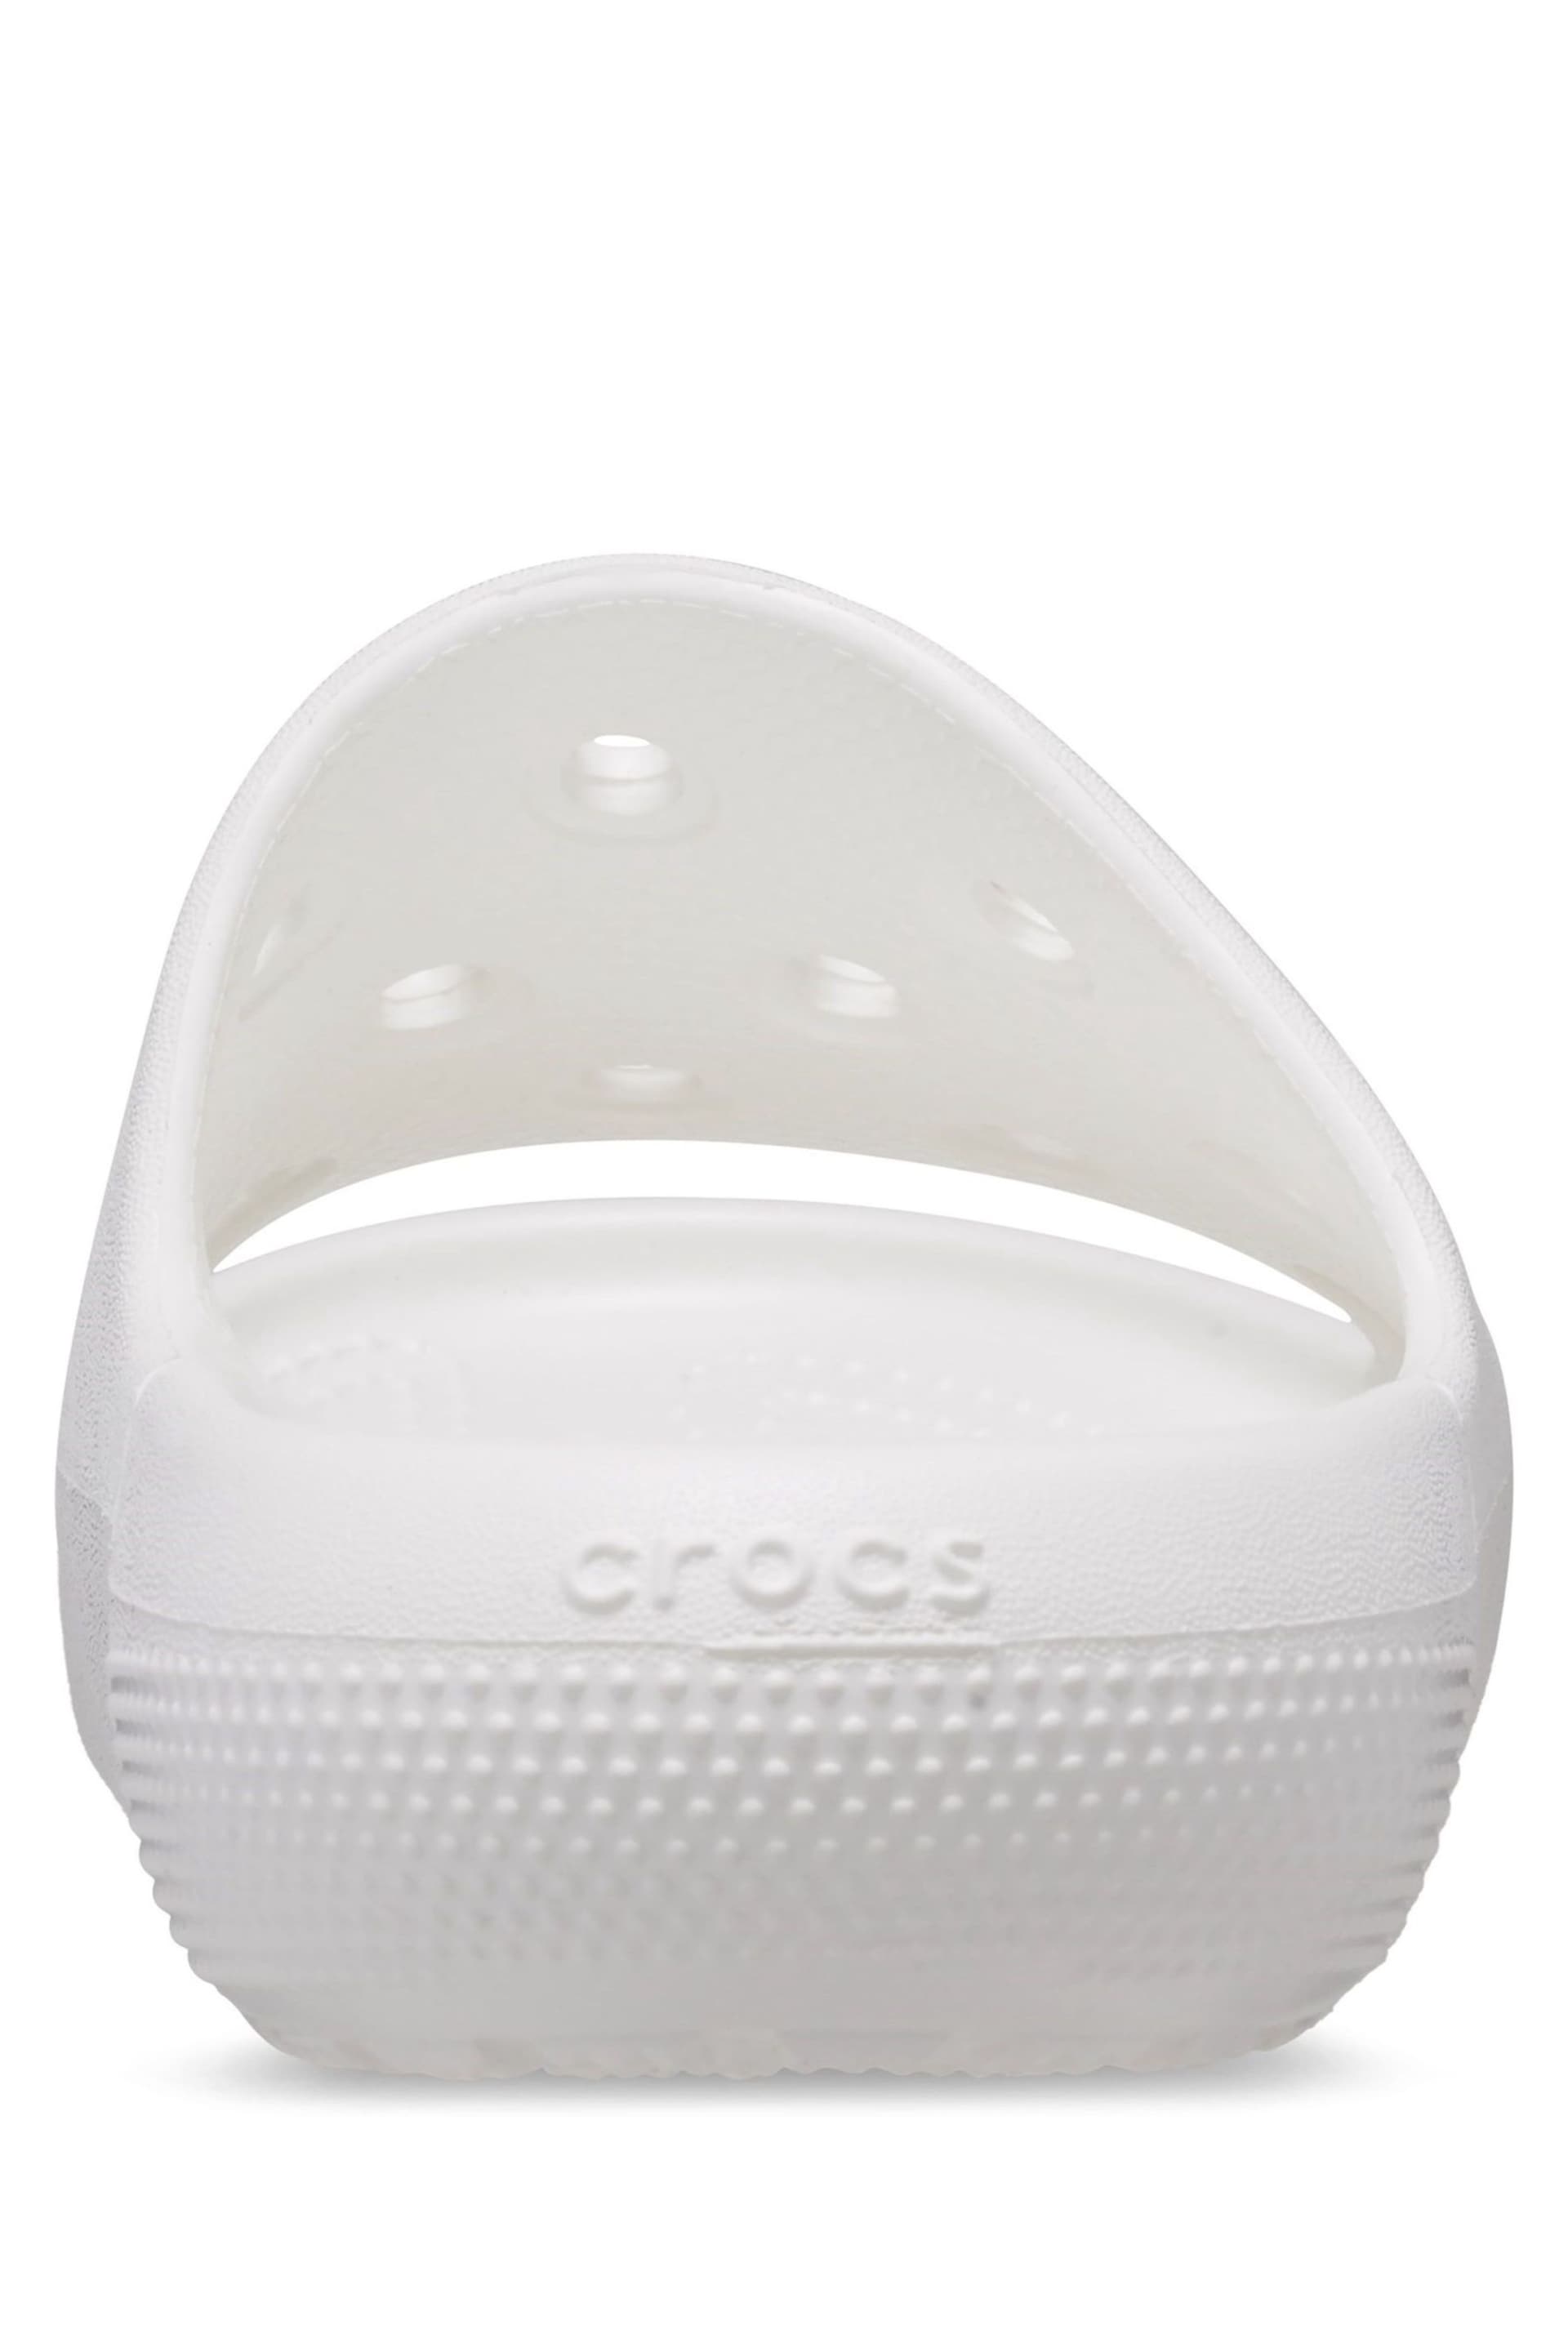 Crocs Classic Unisex Sandals - Image 4 of 5